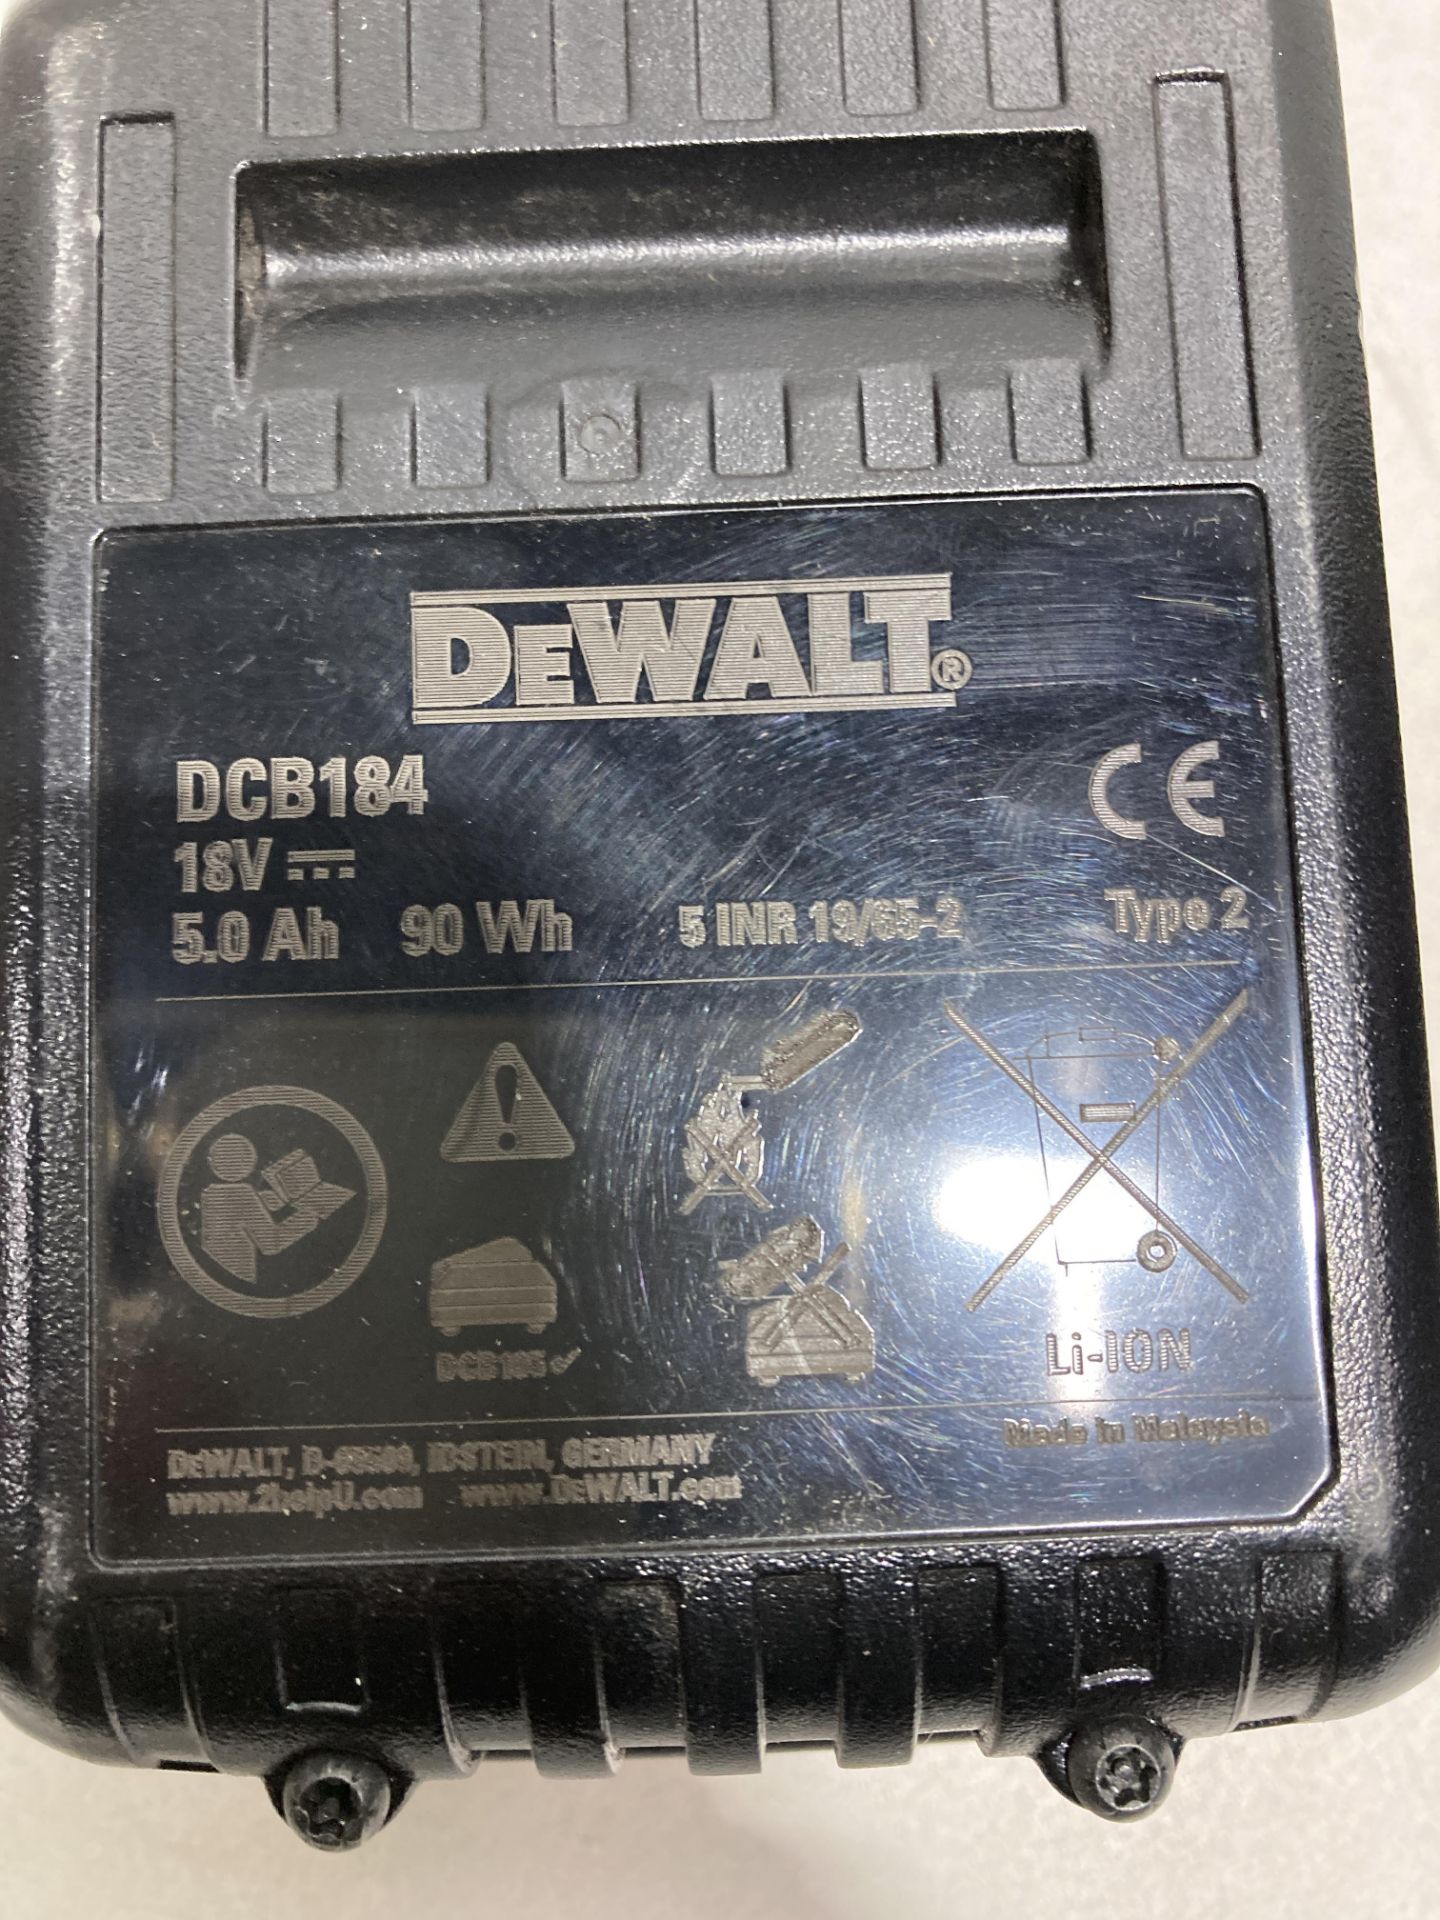 DeWalt DCB184 18V XR Li-Ion 5.0Ah Battery | RRP £62.95 - Image 4 of 4